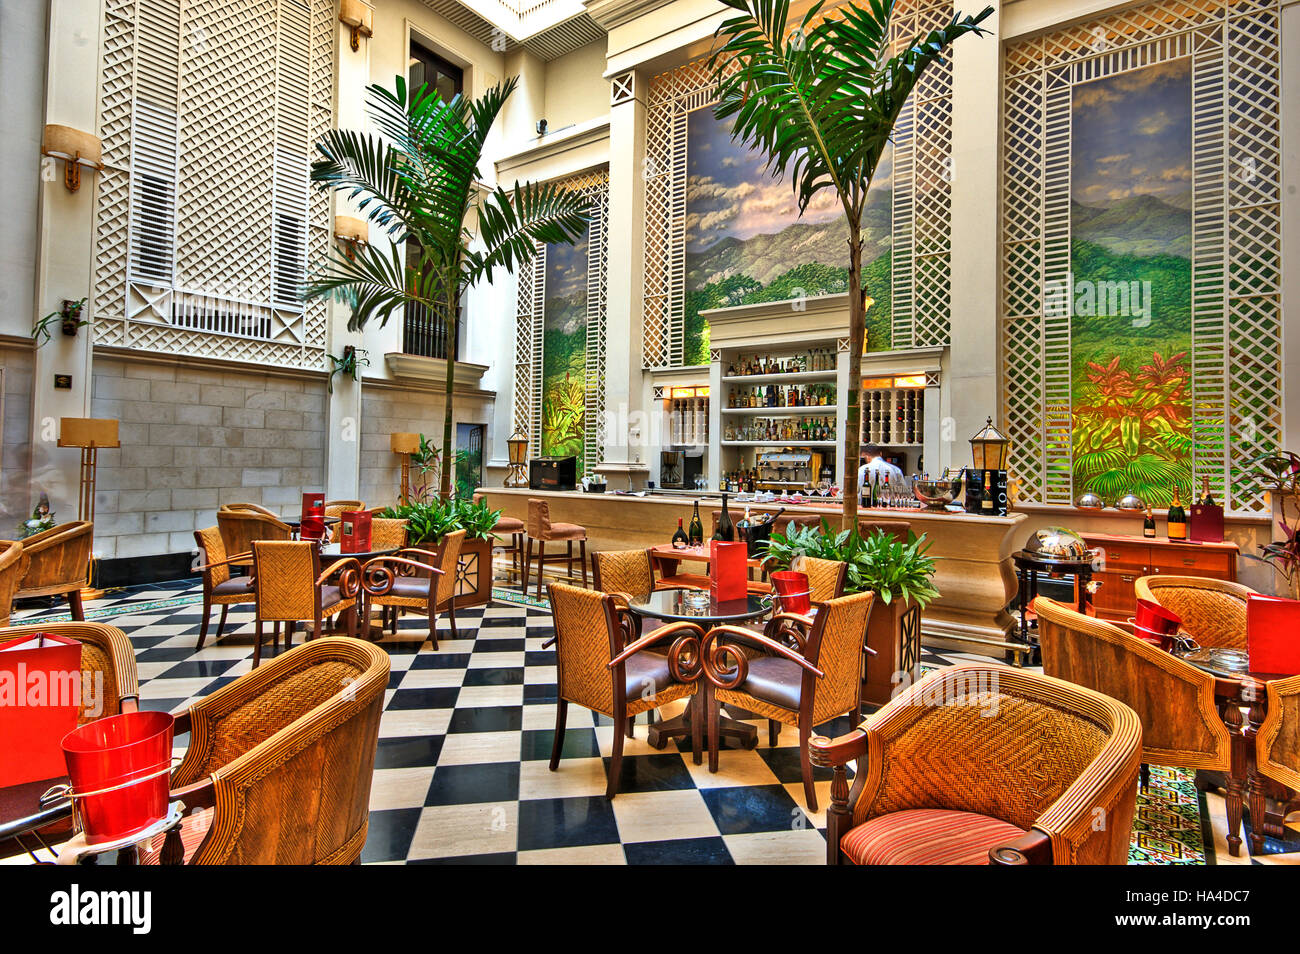 Hôtel Saratoga, La Havane, Cuba, Caraïbes Photo Stock - Alamy